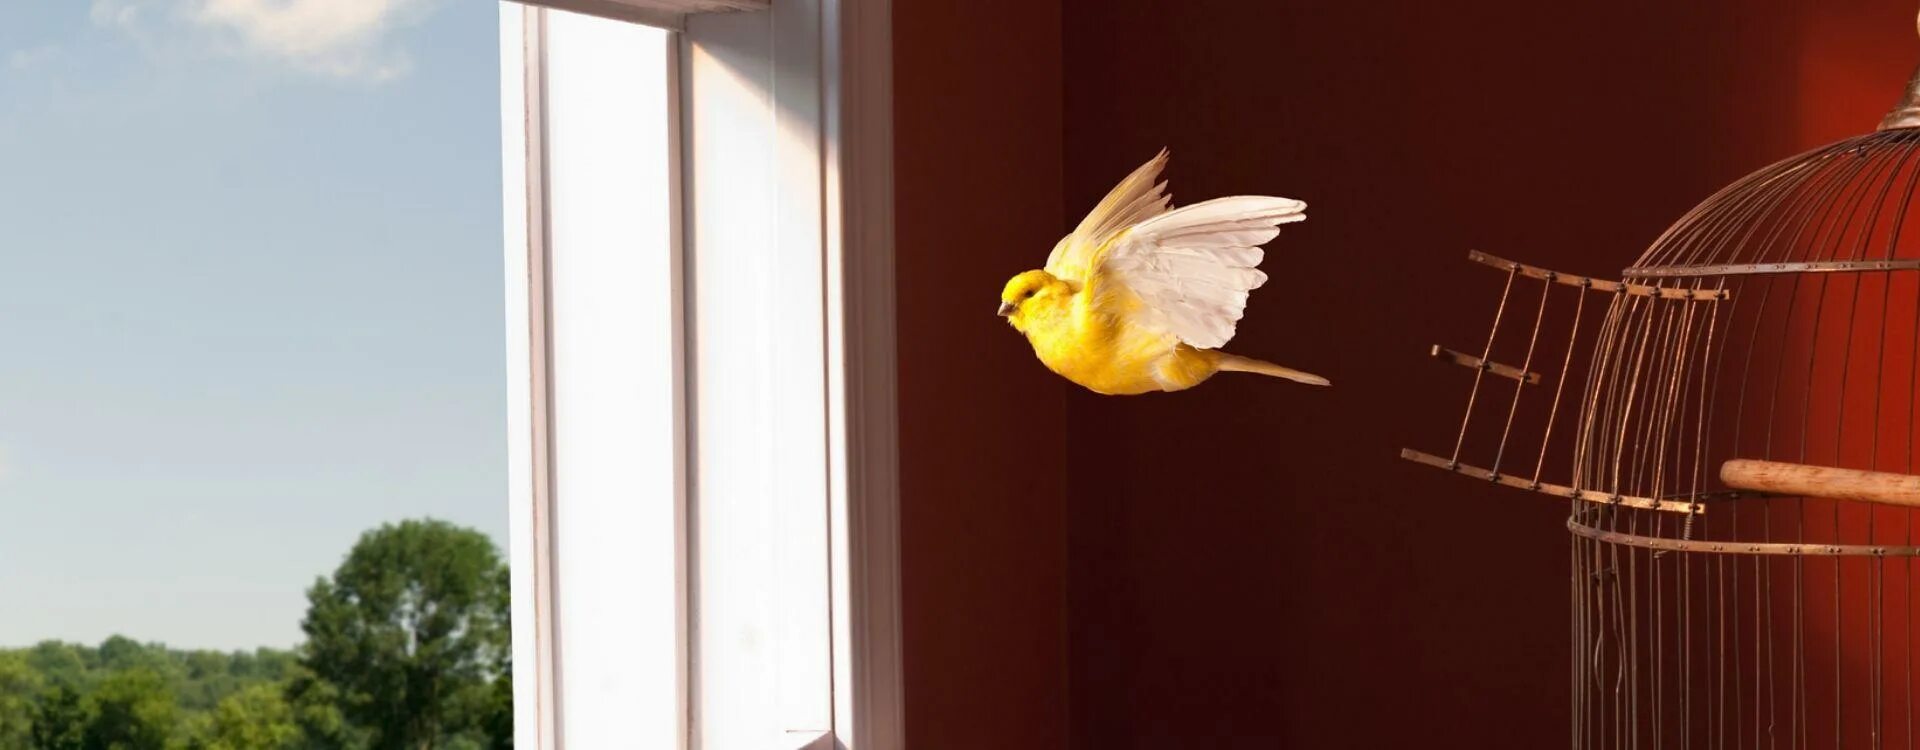 Песня я ловлю птичку. Птичка улетает из клетки. Клетка с птицей на окне. Попугай улетел. Птица вылетает из клетки фото.